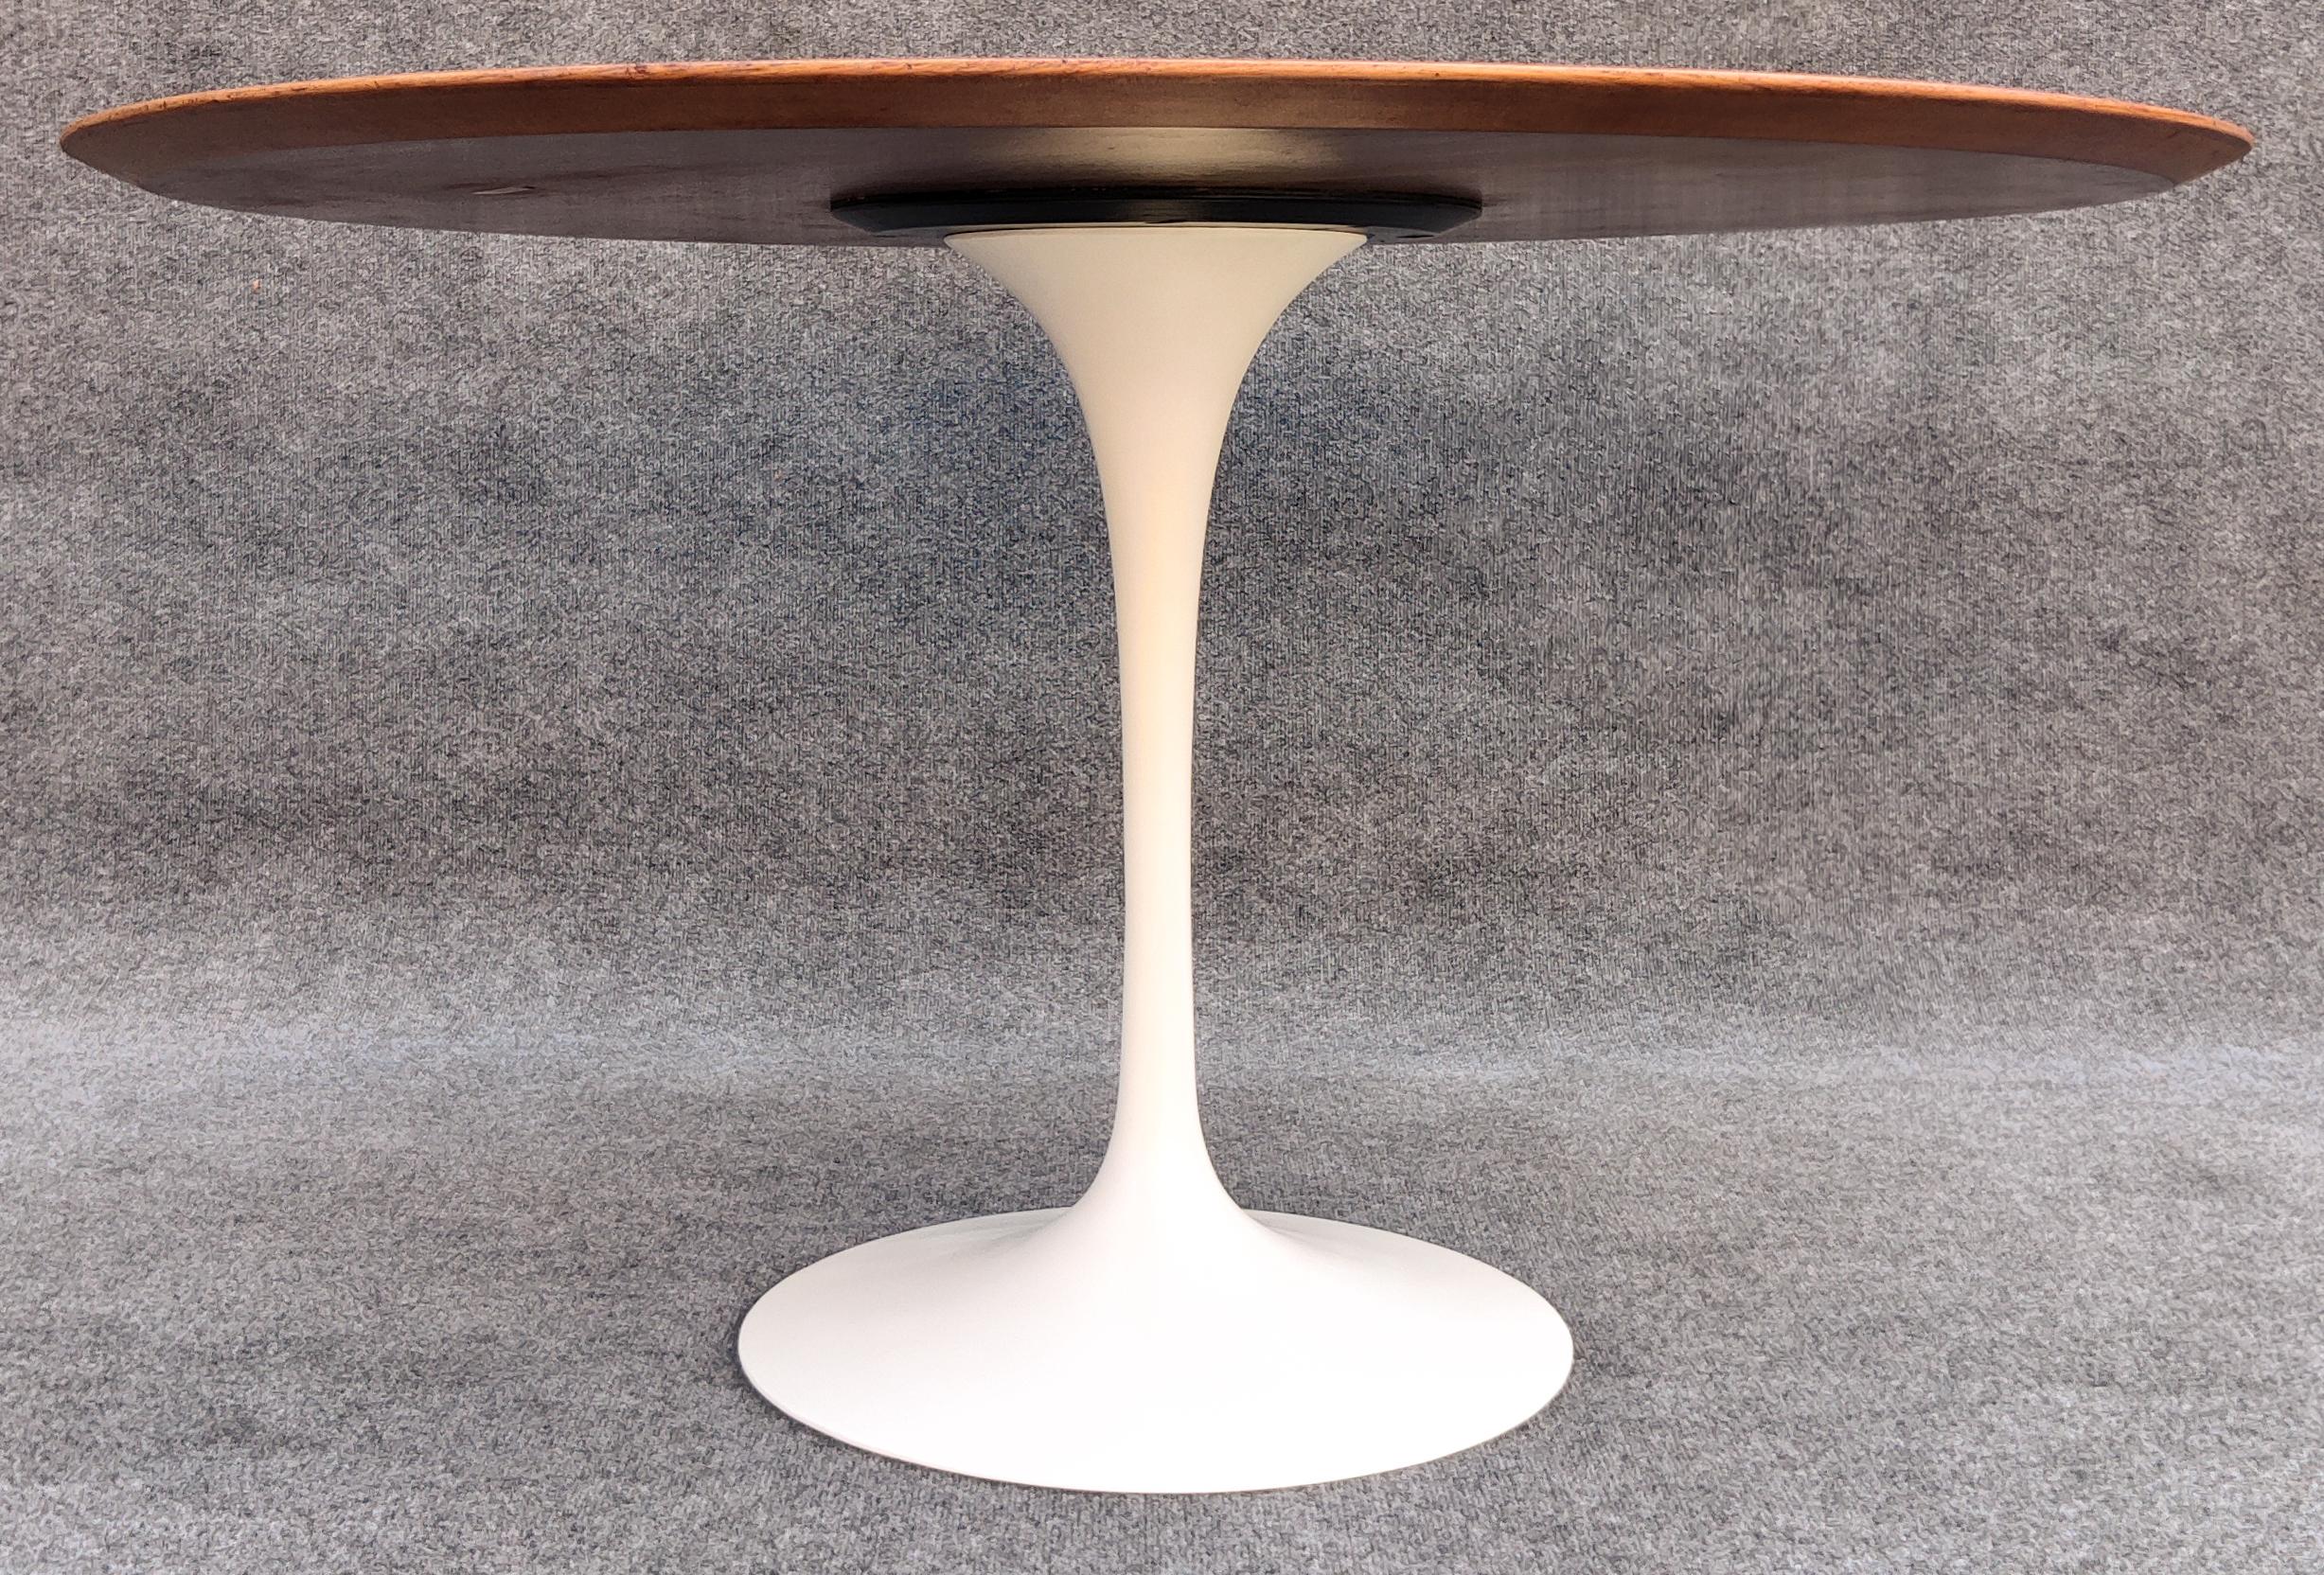 Mid-20th Century Restored Early Eero Saarinen Knoll Tulip Dining Table Teak Top Iron Base 48